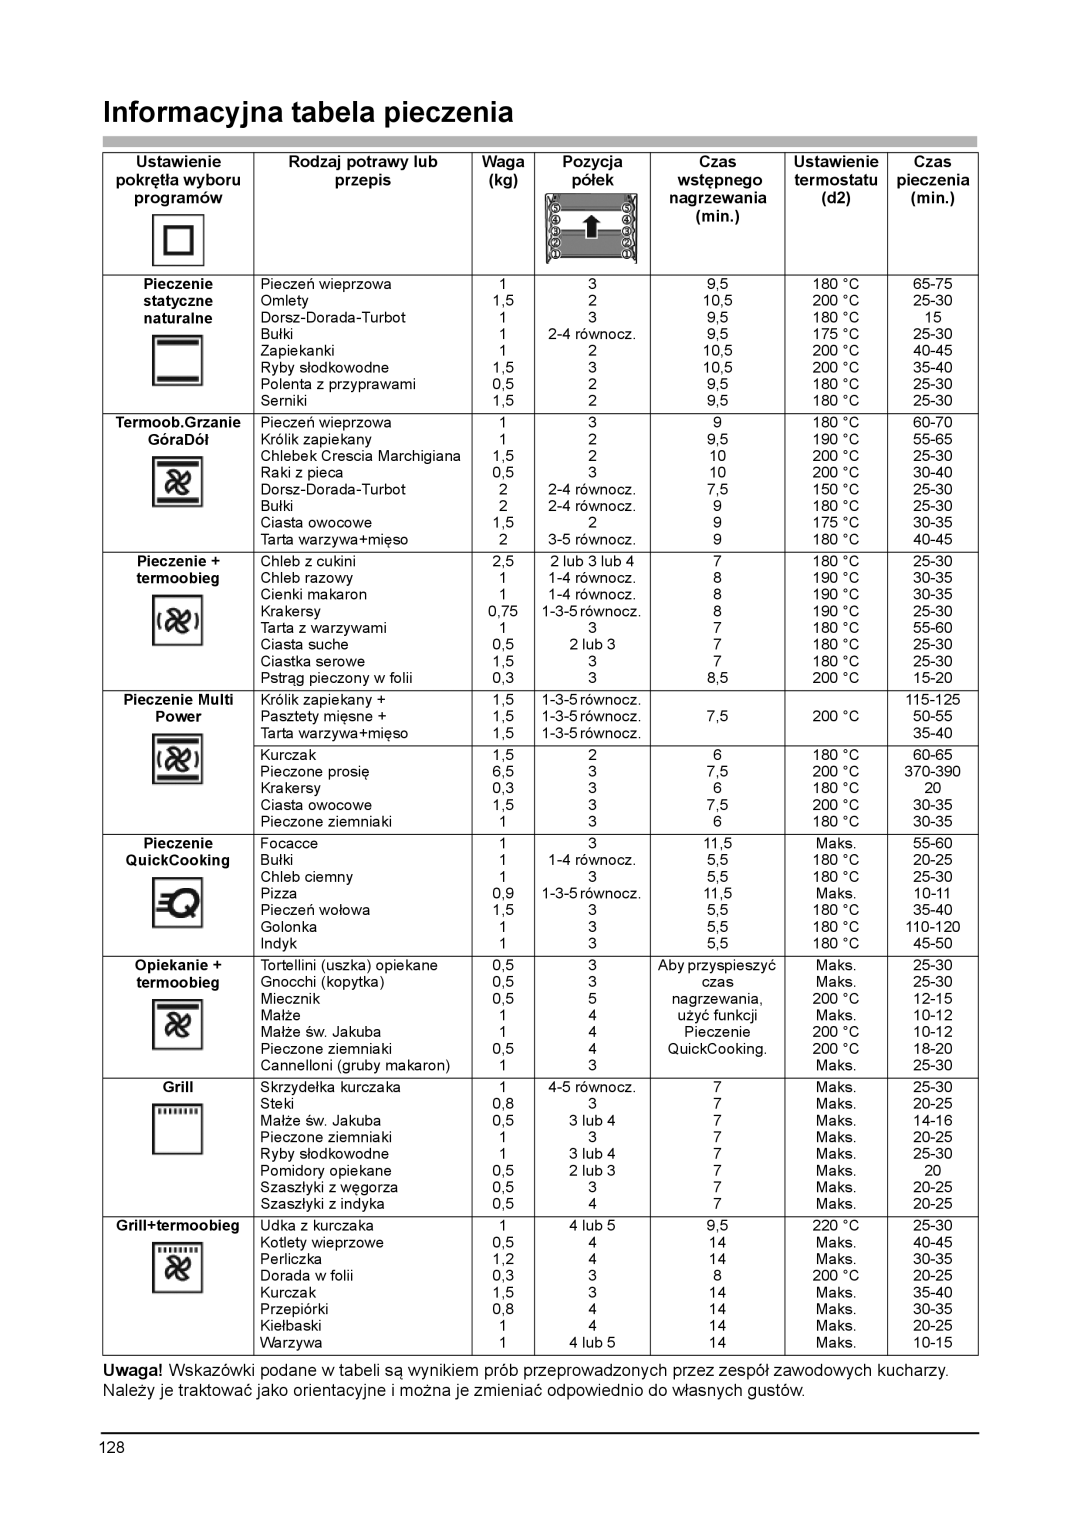 Franke Consumer Products CR 910 M 48 Informacyjna tabela pieczenia, Rodzaj potrawy lub, Pozycja, Czas, Ustawienie, przepis 